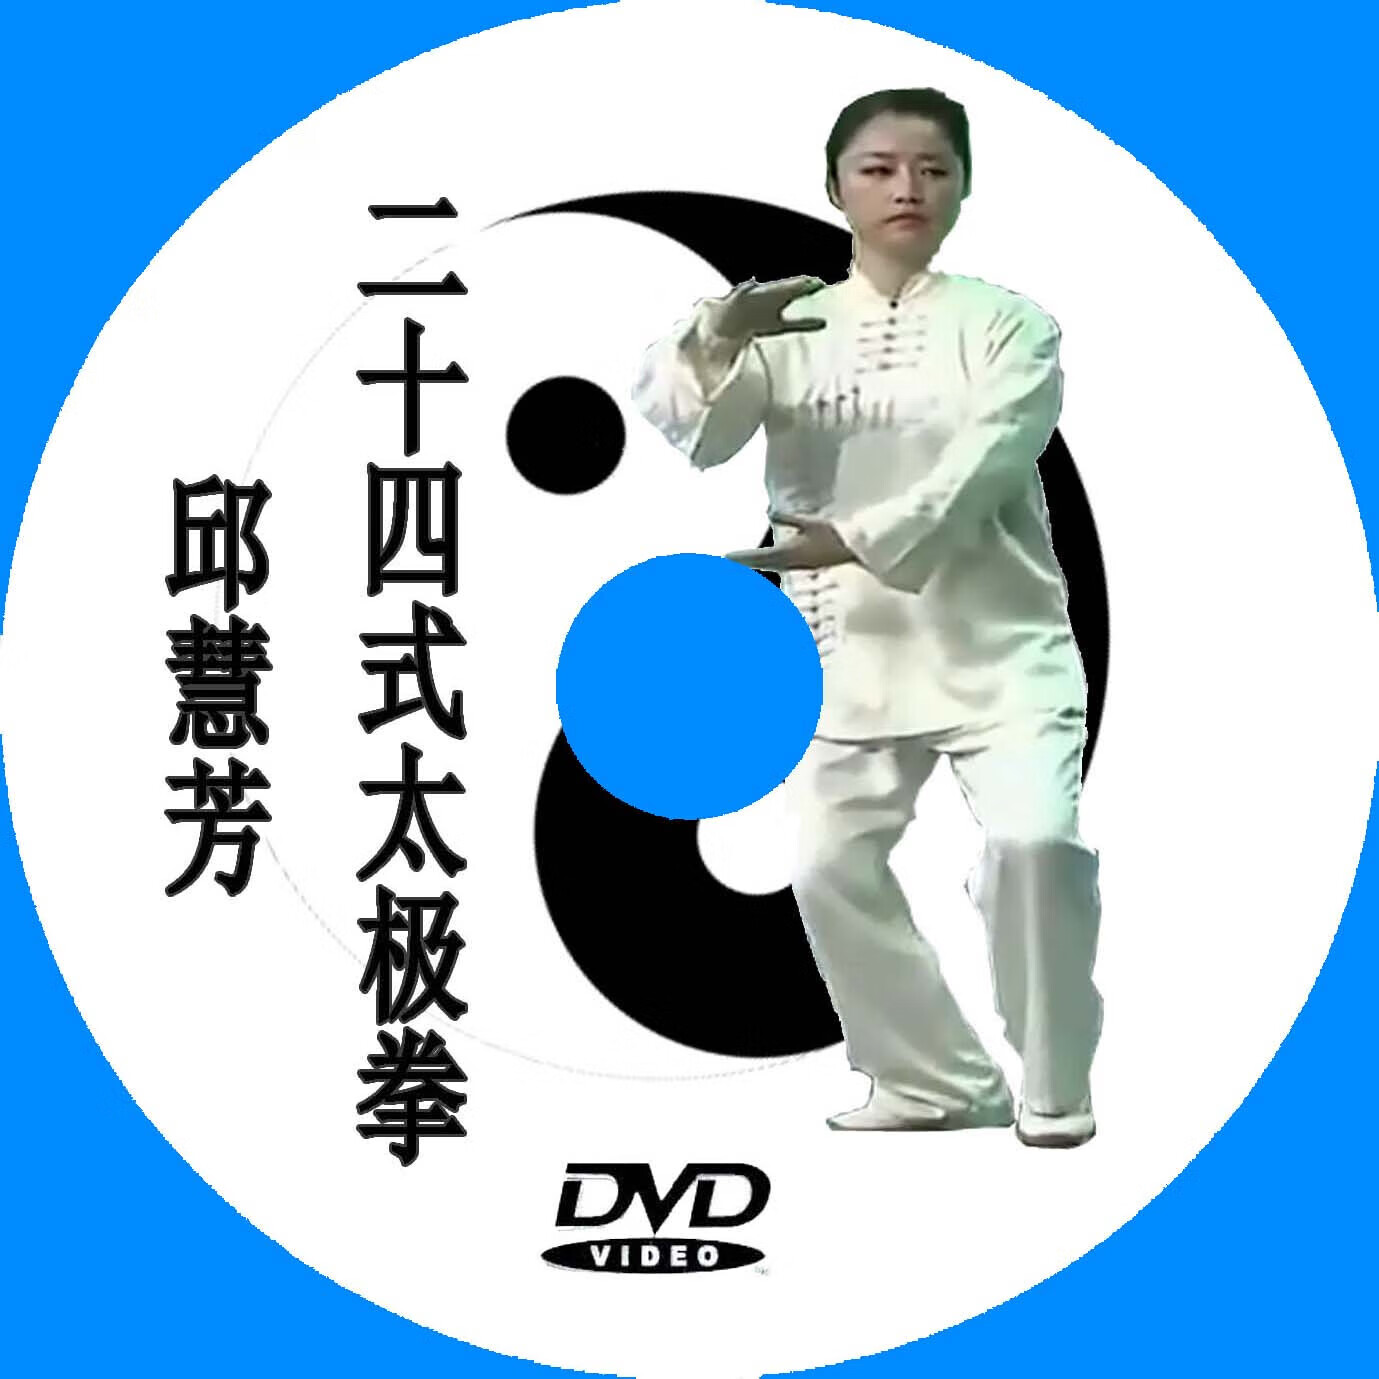 邱慧芳二十四24式太极拳 dvd教学视频 示范 高清 盒装